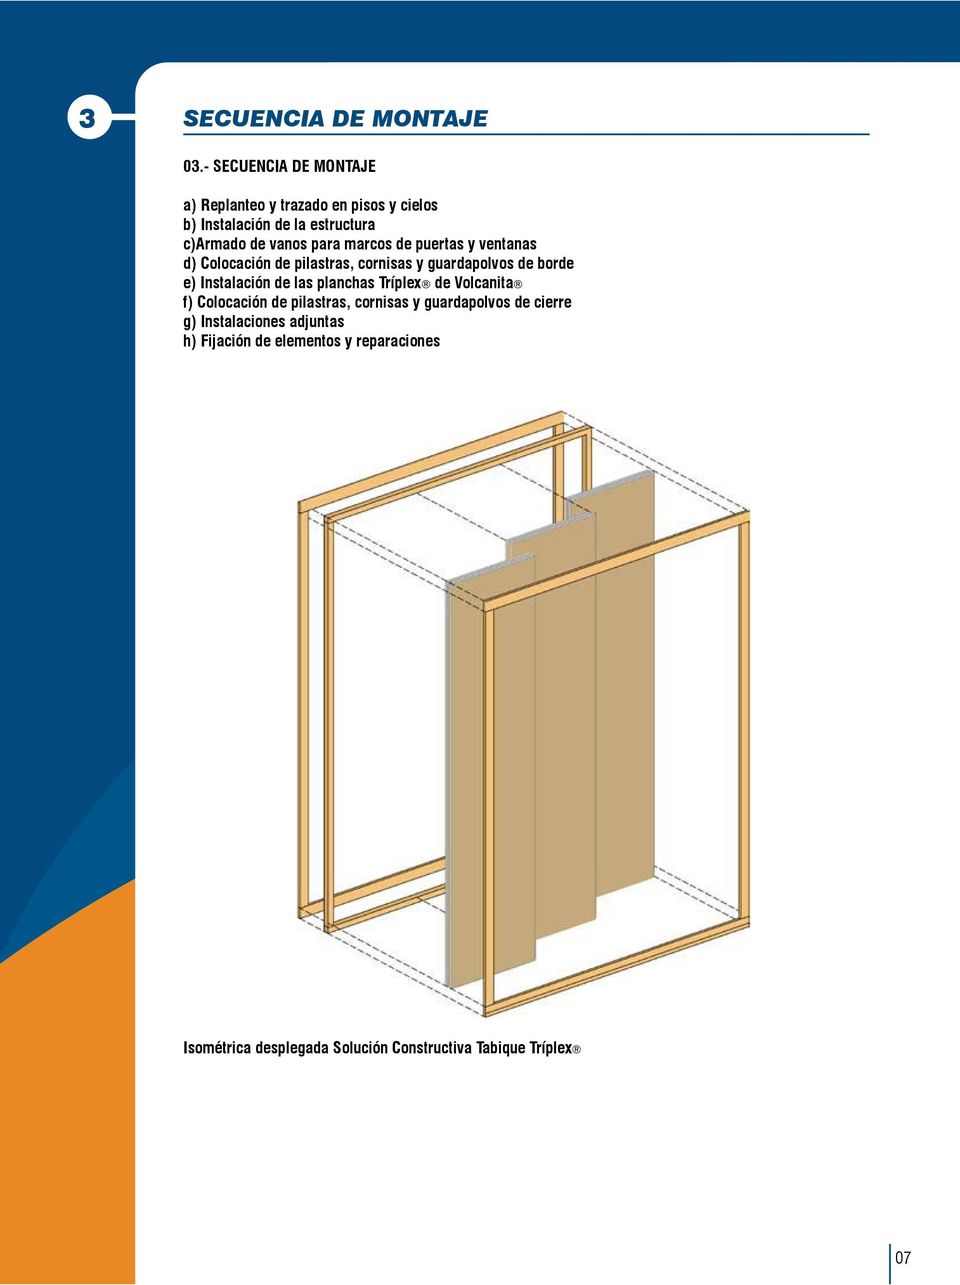 marcos de puertas y ventanas d) Colocación de pilastras, cornisas y guardapolvos de borde e) Instalación de las